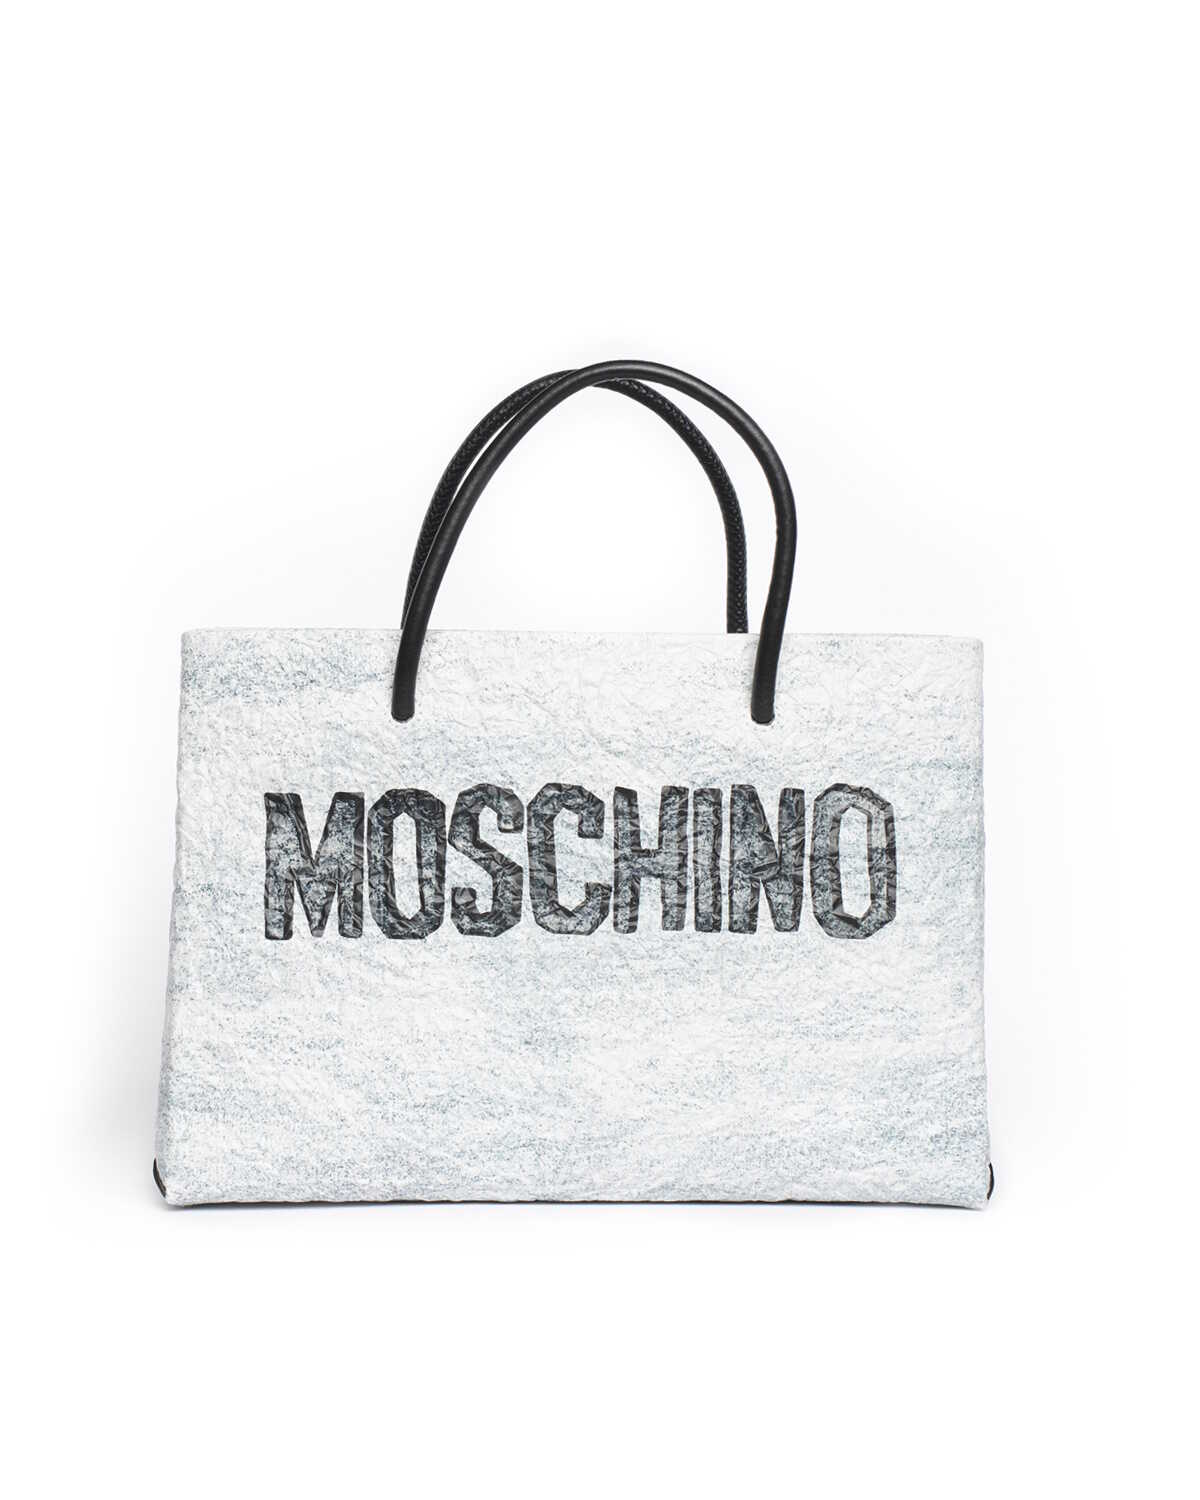 Moschino Carved Stone Bag GRIGIO